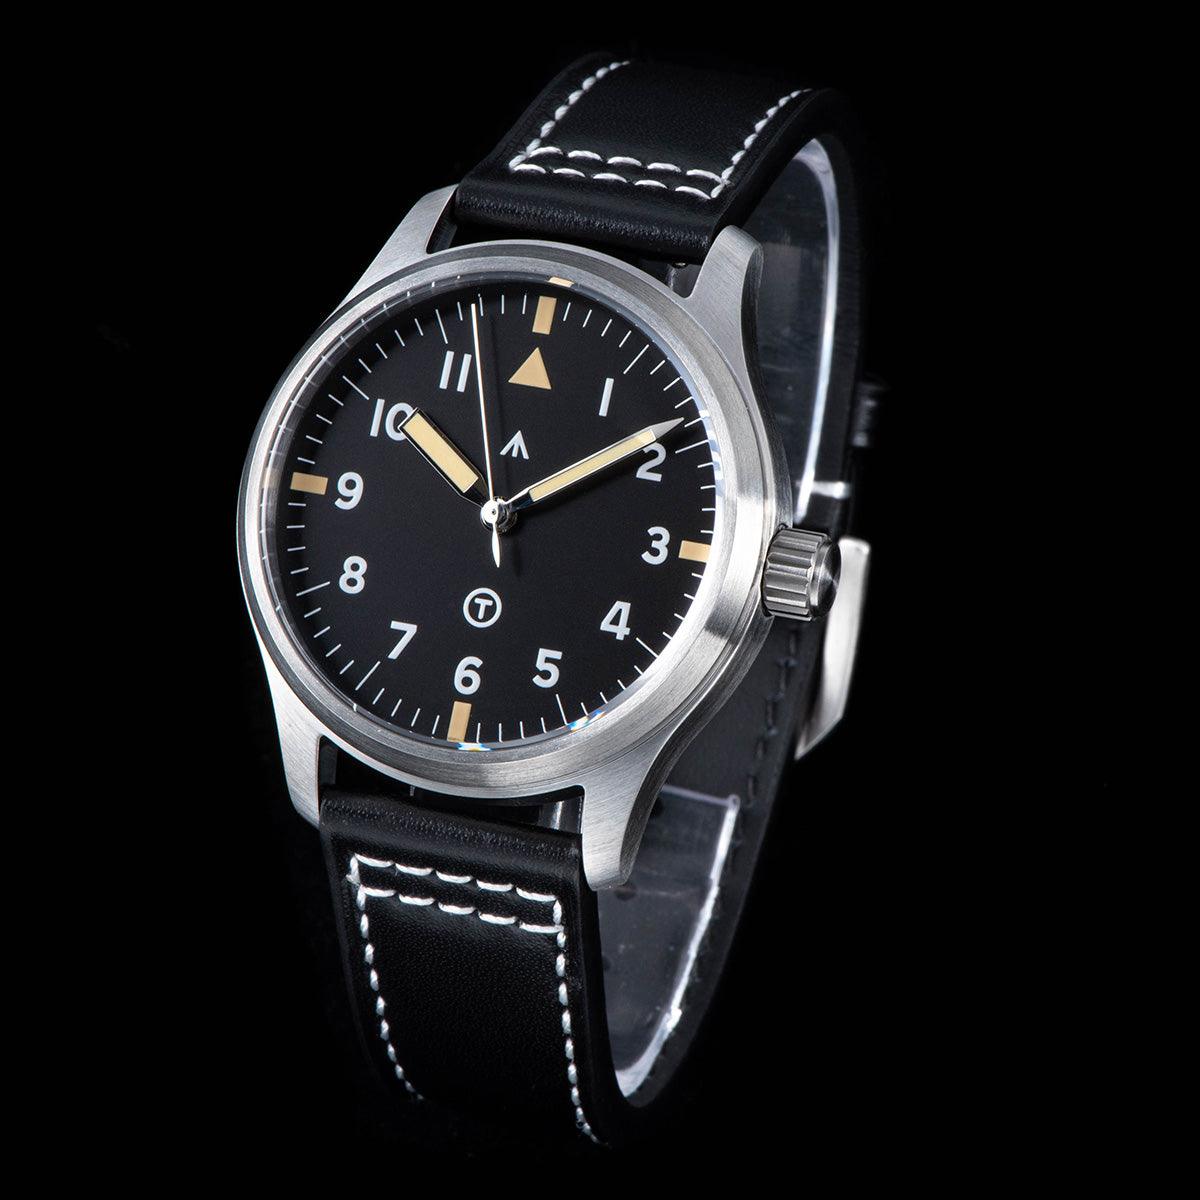 Seagull pilot automatic mechanical men's watch luminous business waterproof 24 gem star seagull dream men's watch - Murphy Johnson Watches Co.